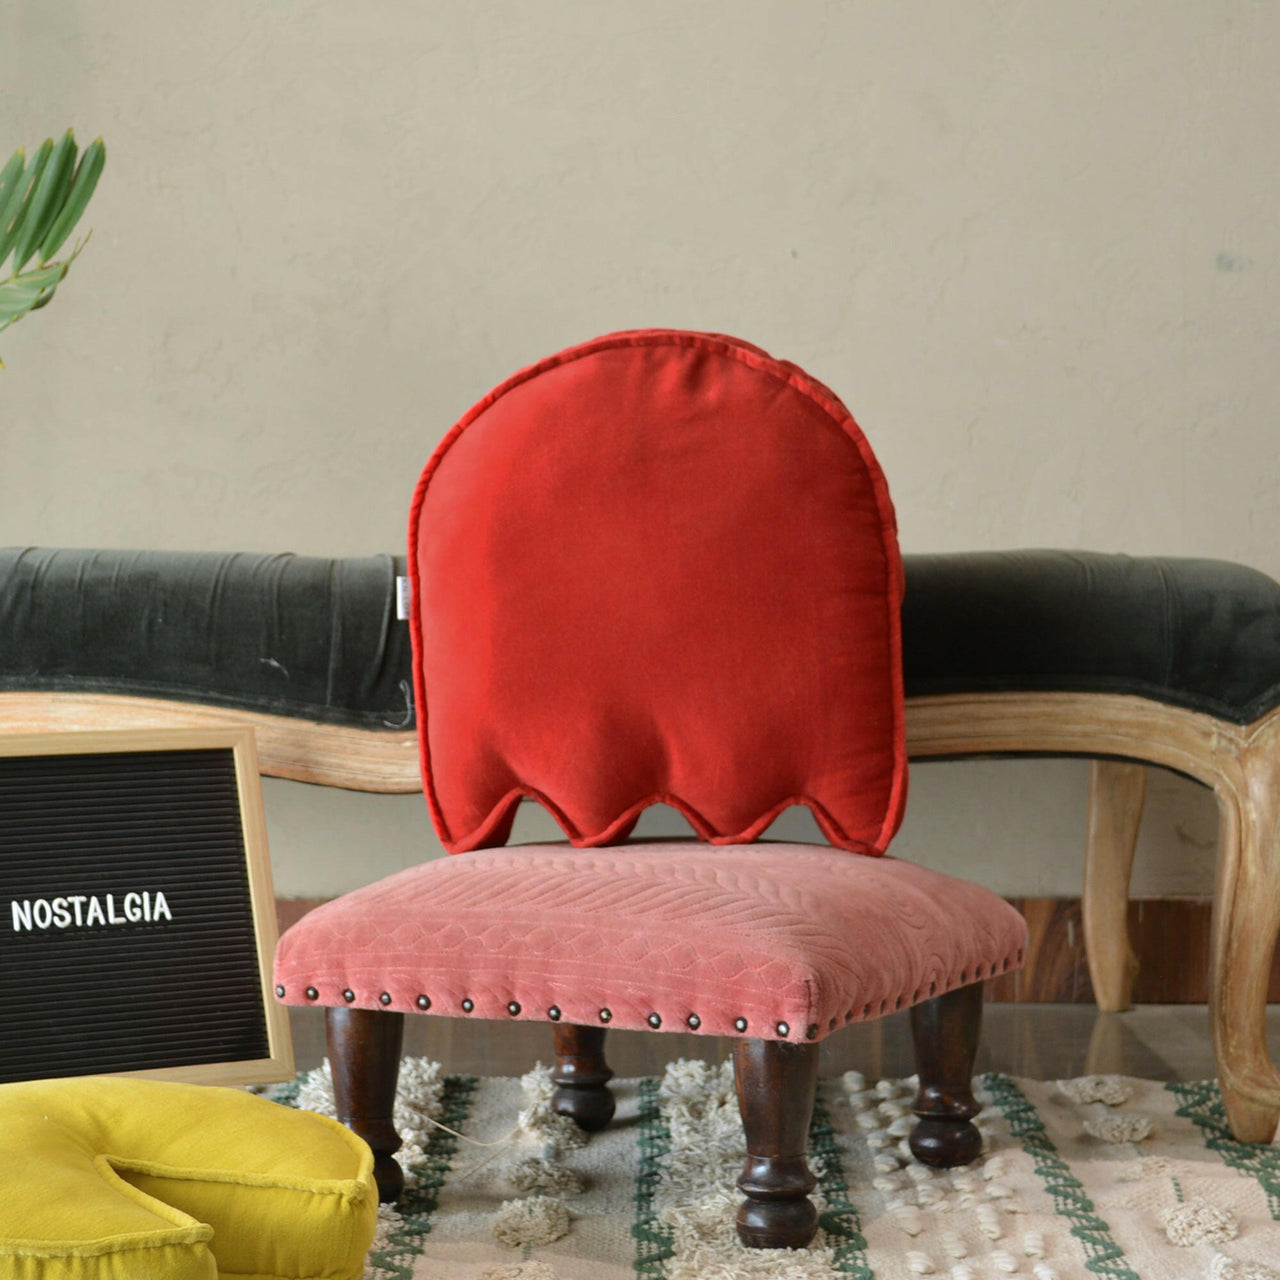 Velvet Pack Man Inspired Cushion.